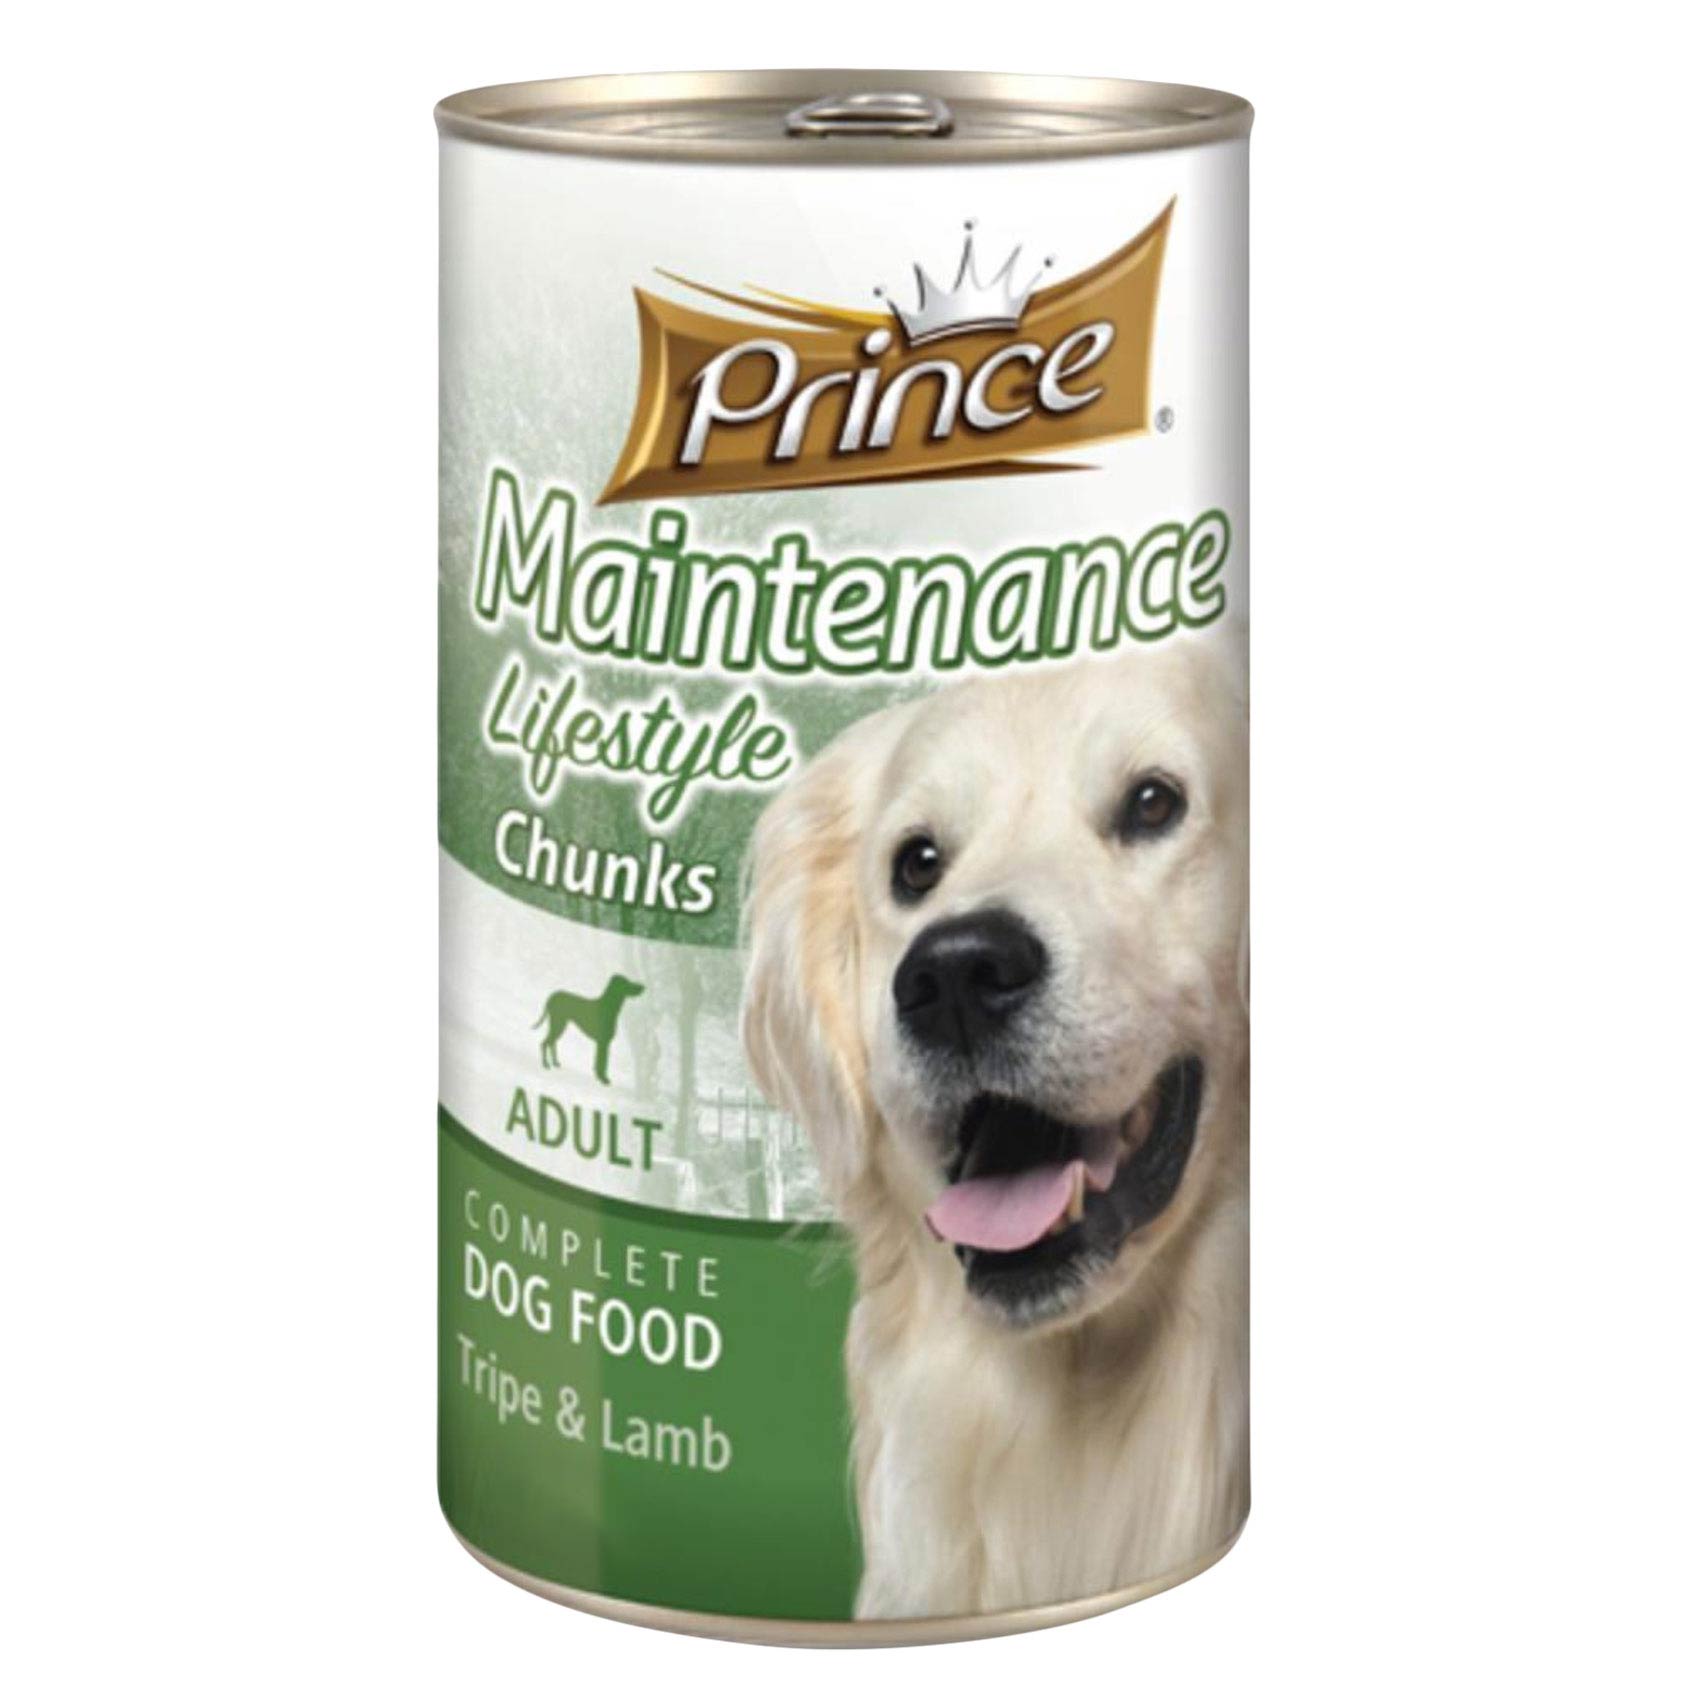 Prince Chunks Lamb Dog Food 1.25kg